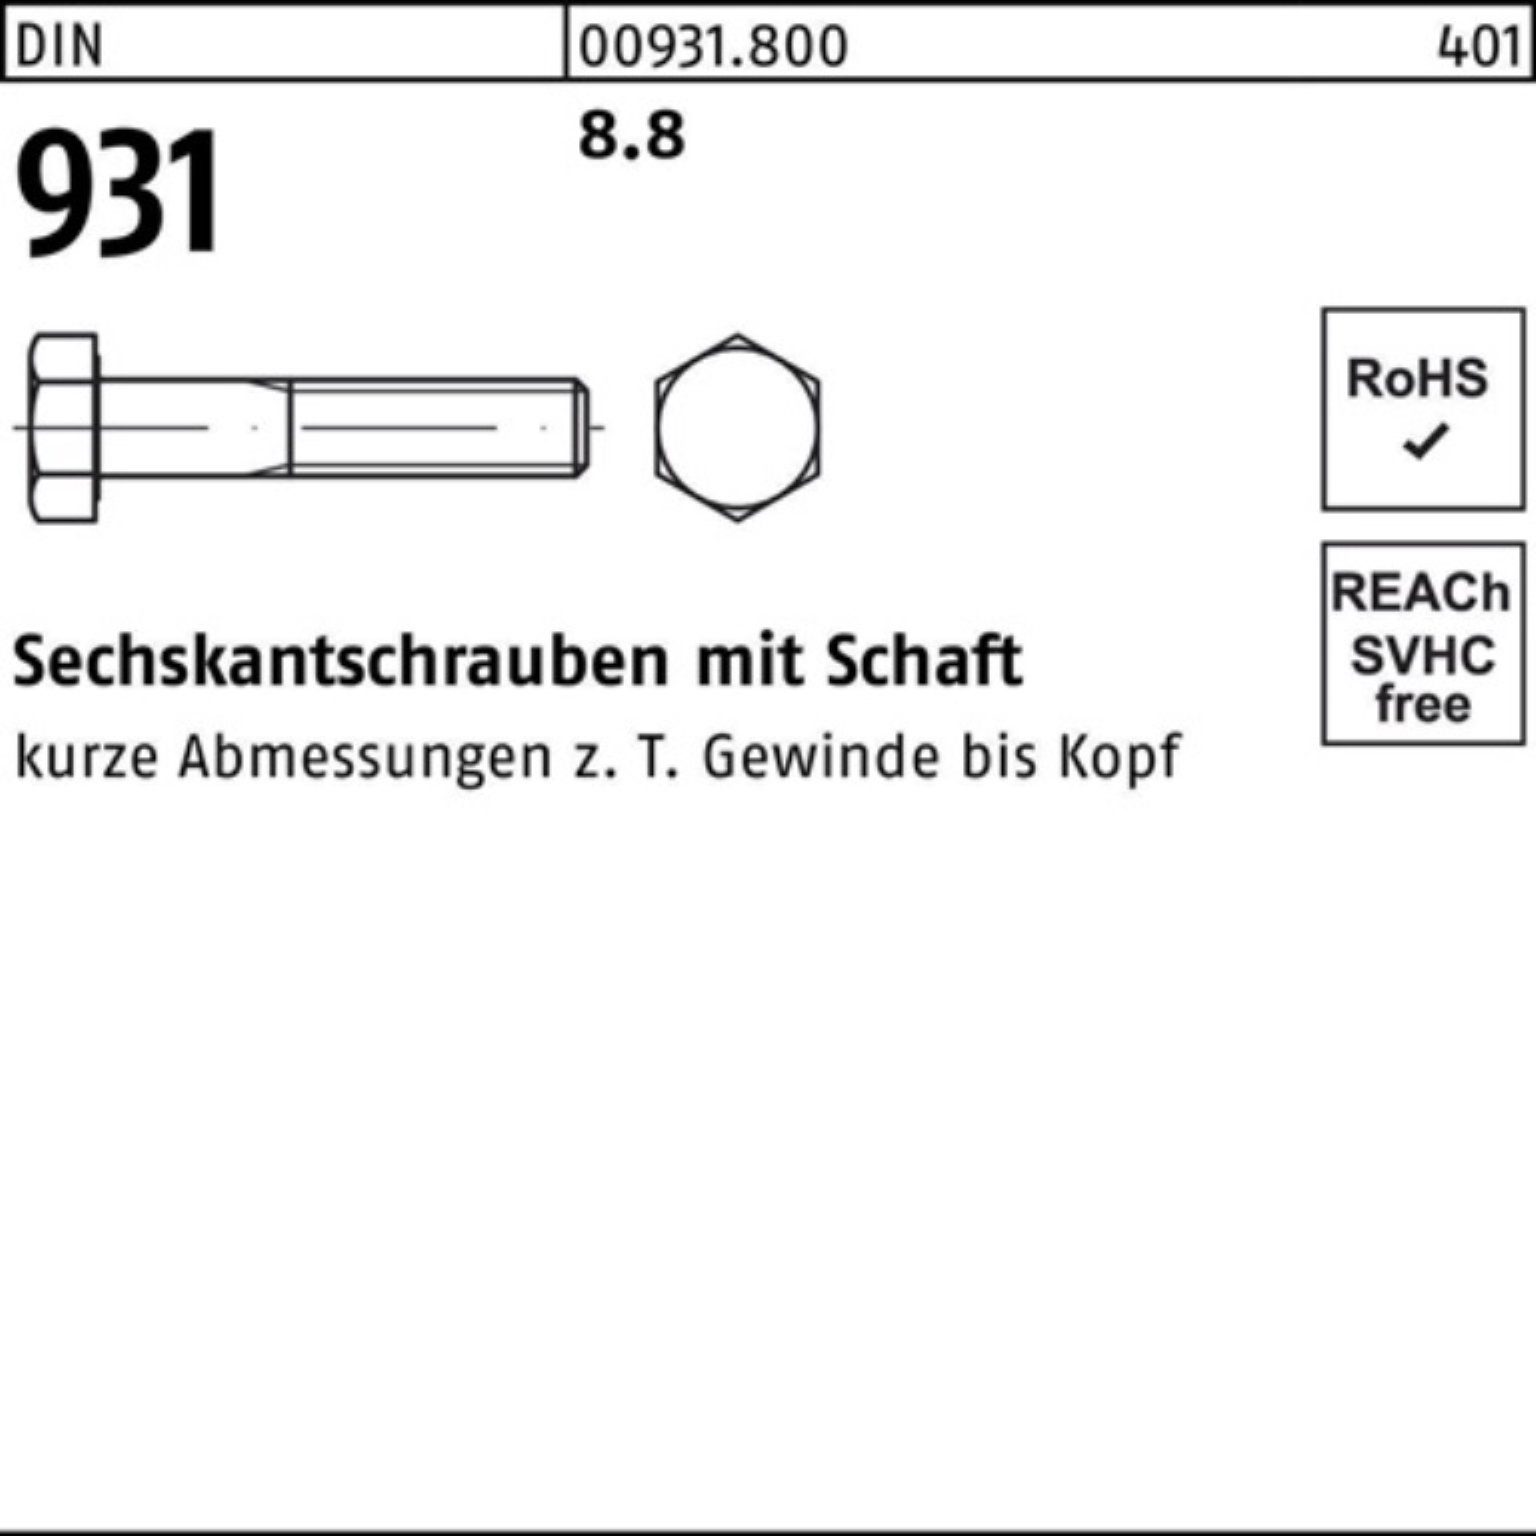 Reyher Sechskantschraube 100er DIN Sechskantschraube Stück DIN M10x 931 100 45 Pack Schaft 8.8